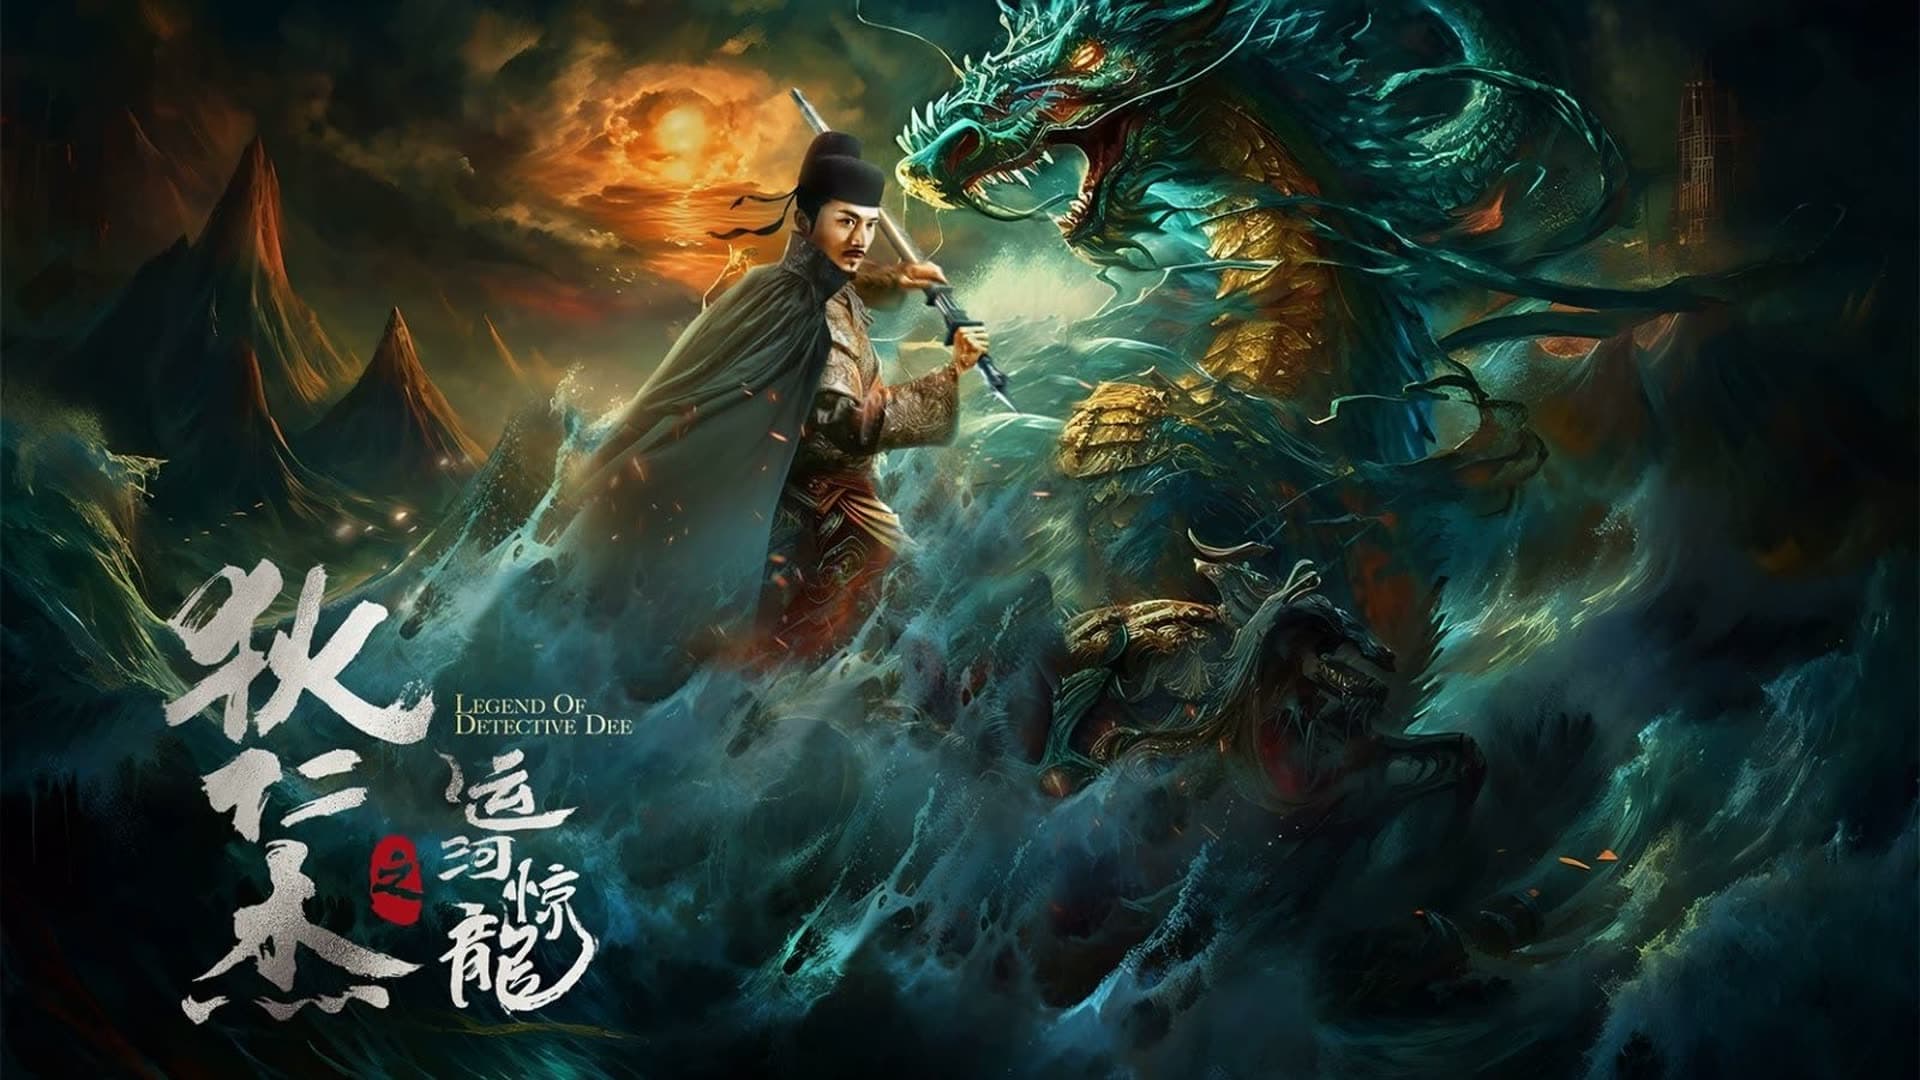 Địch nhân kiệt: vận hà kinh long - Detective dee and grand canal dragon